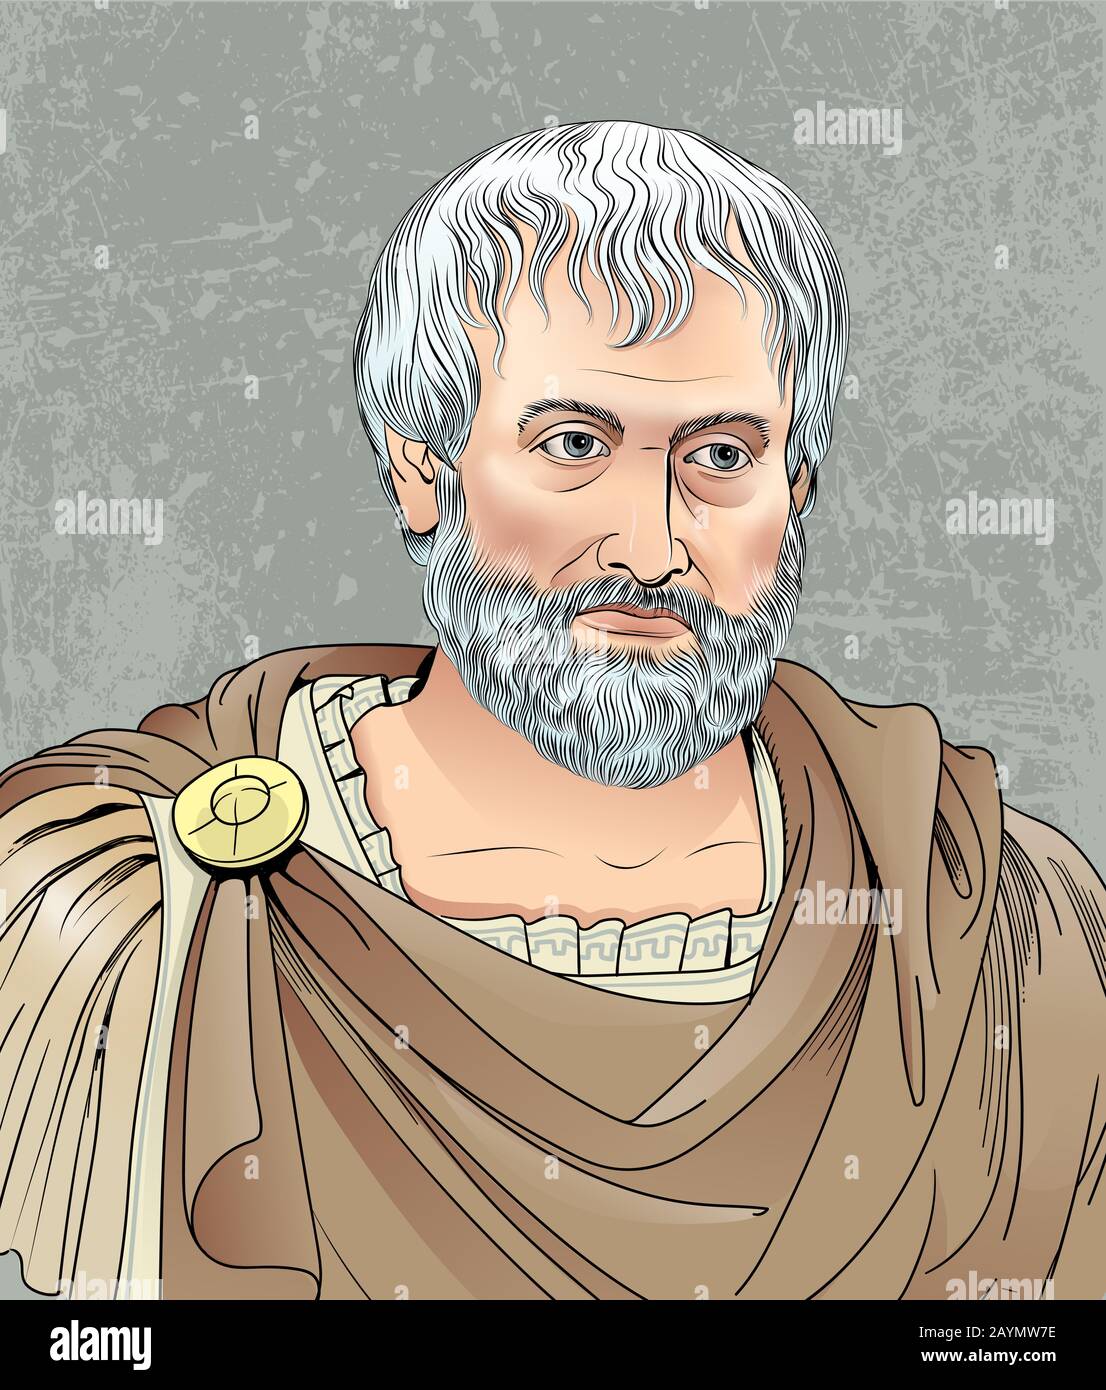 Aristoteles Vektorporträt in der Strichkunst. Er war ein antiker griechischer Philosoph, Wissenschaftler und Autor. Stock Vektor